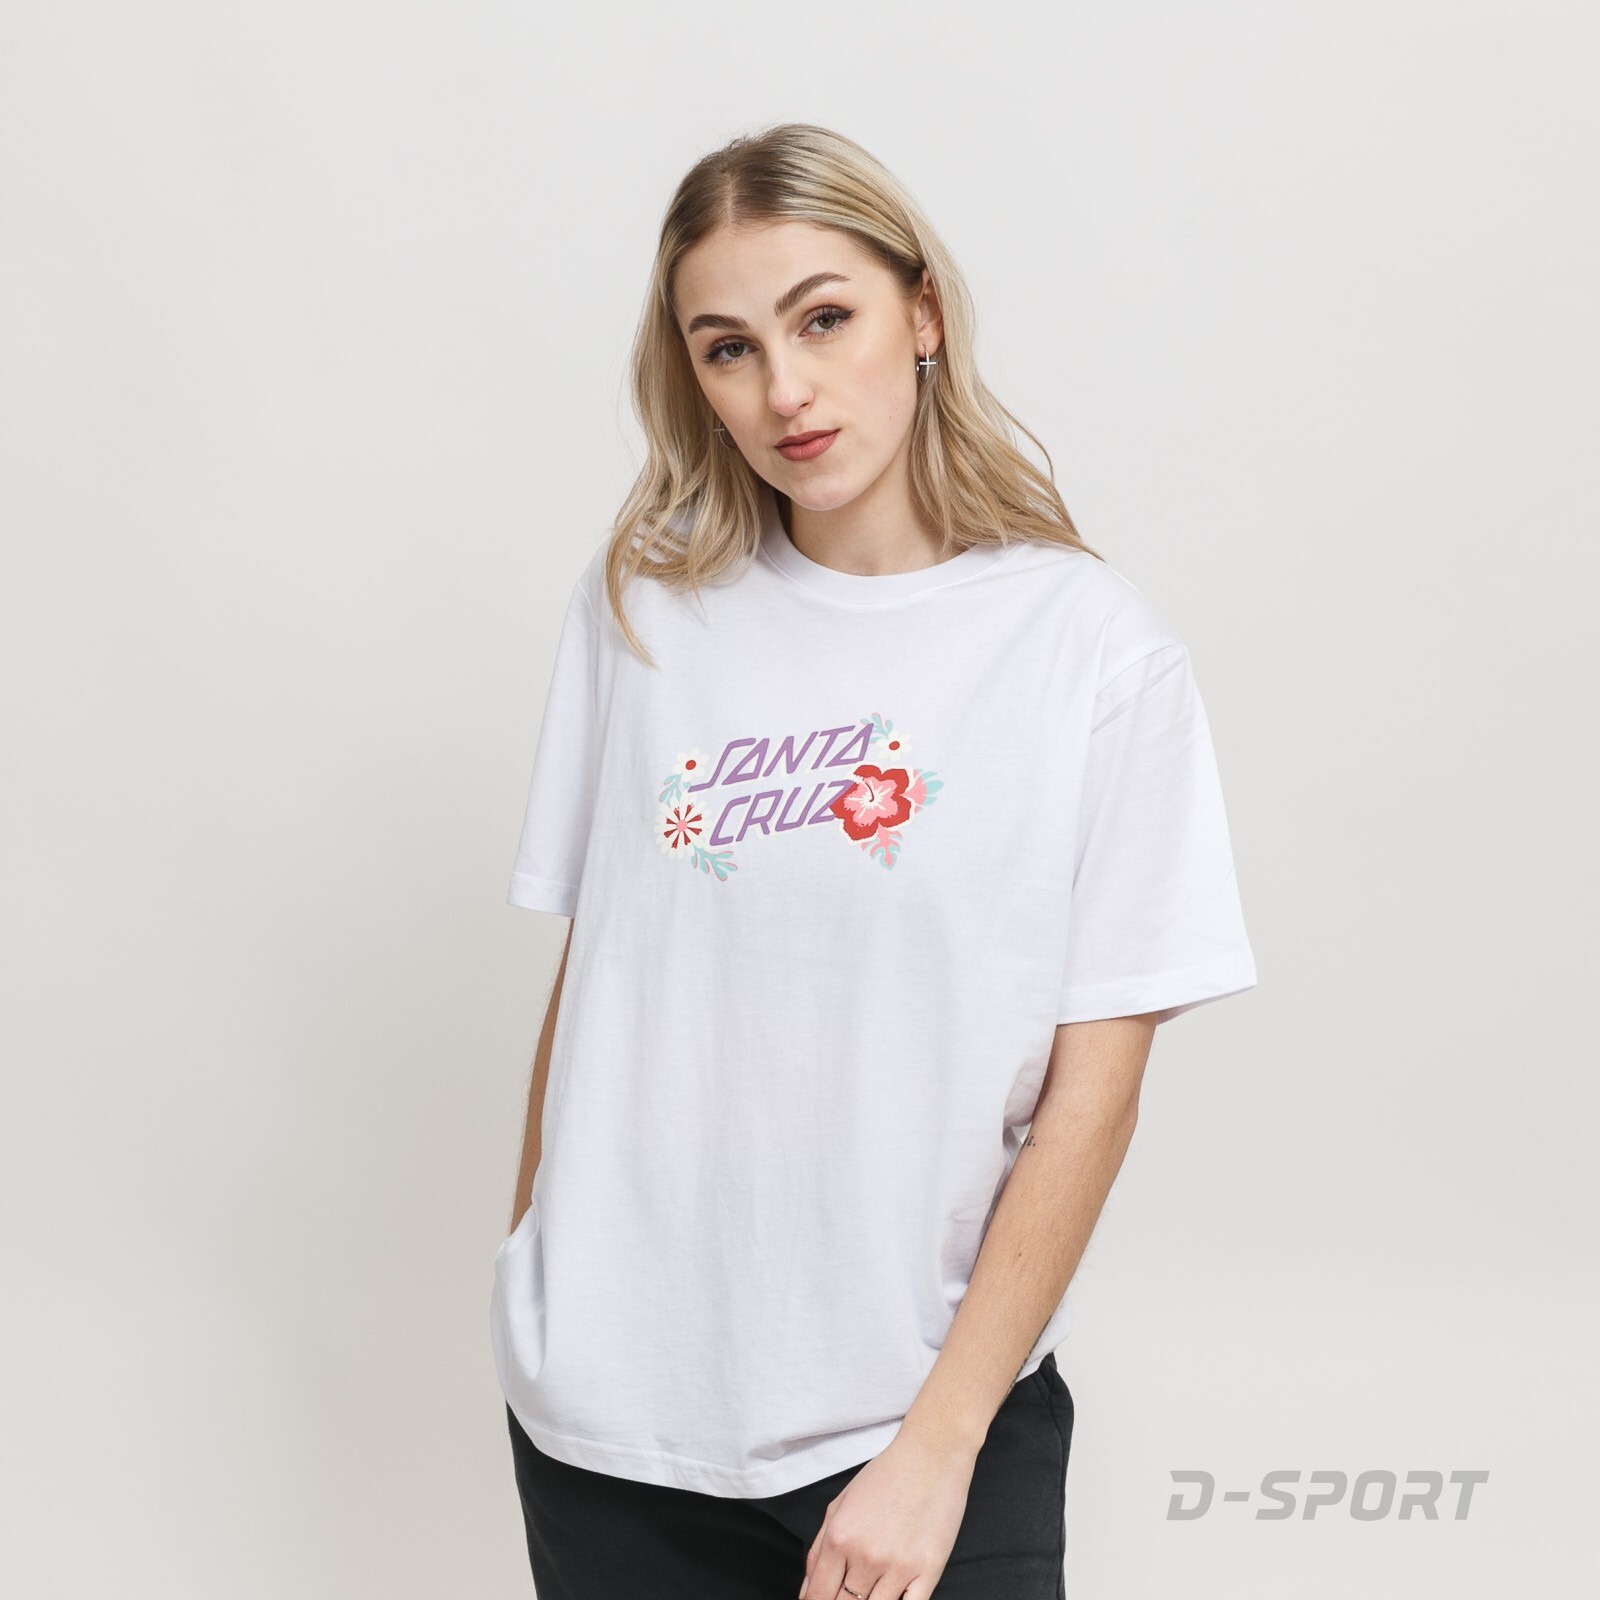 Free Spirit Floral T-Shirt 